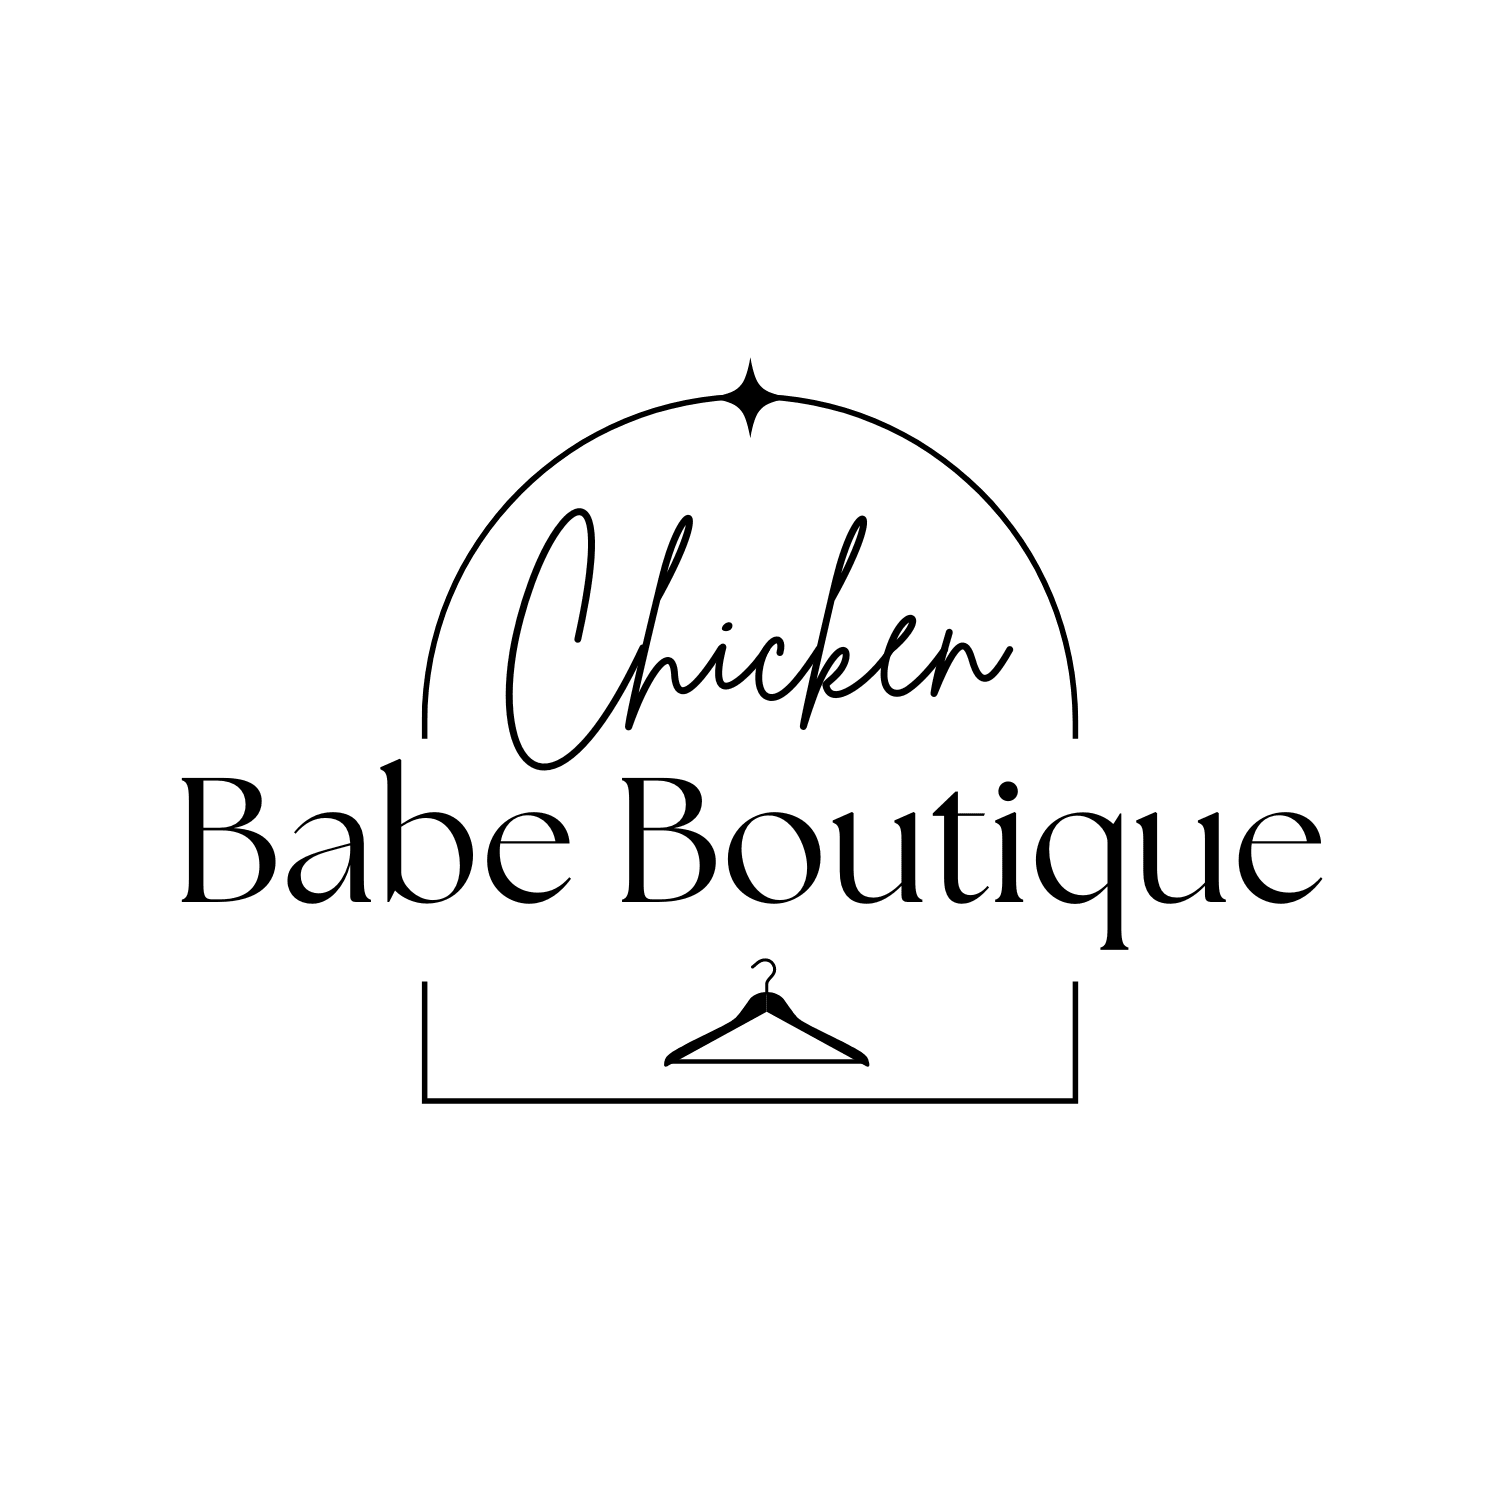 Chicken Babe Boutique